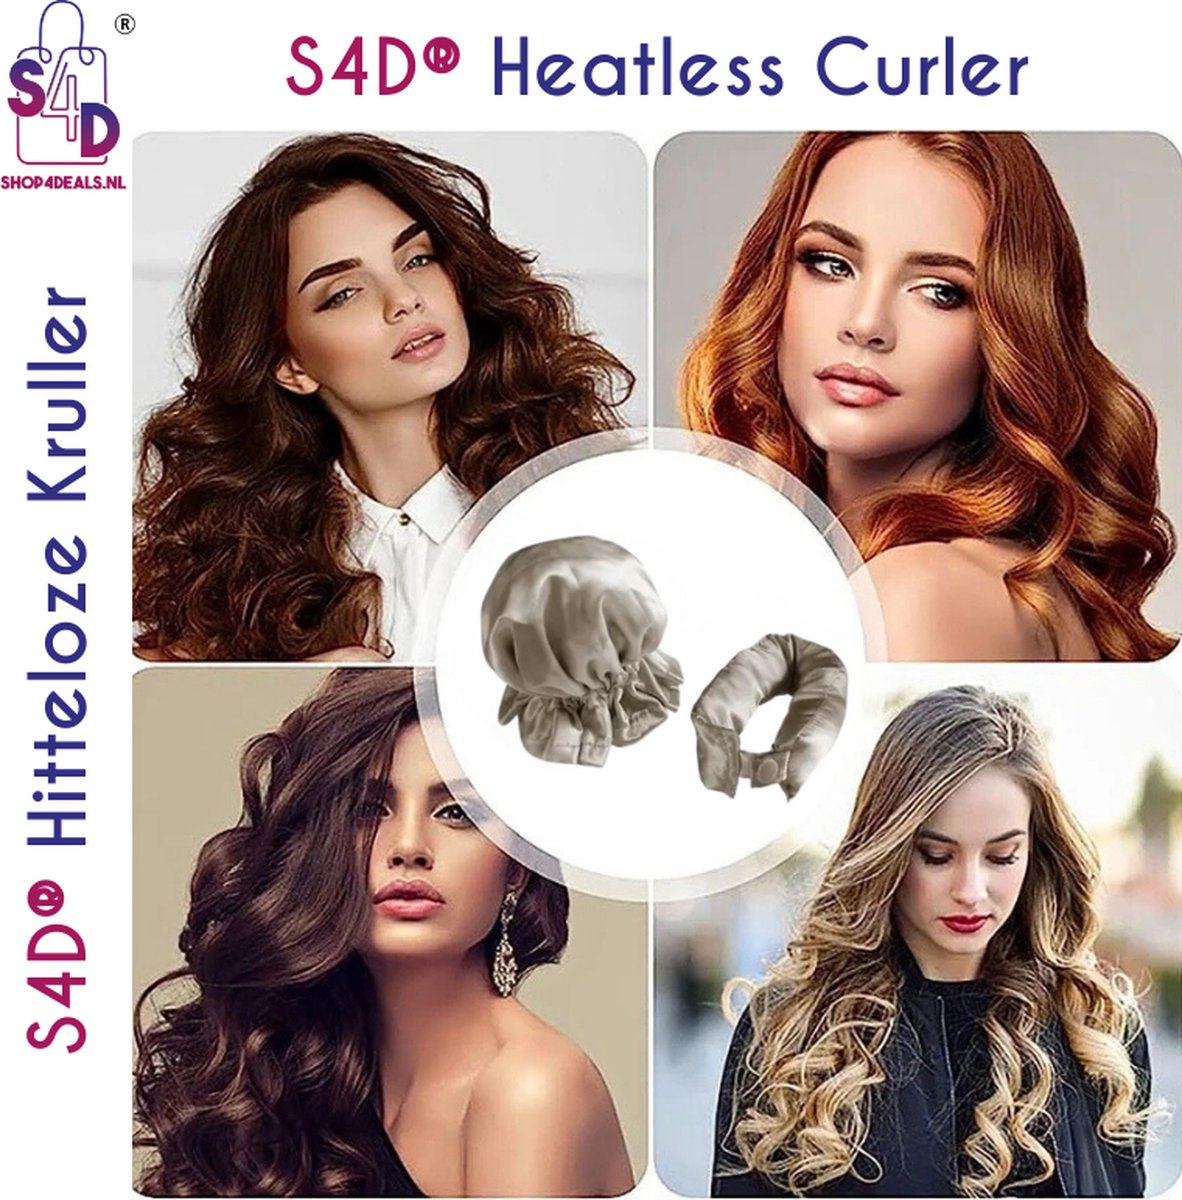 S4D® - Heatless Curls - Krulspelden - Krullen Zonder Hitte - Haarrollers - Overnight Curls - 4 Delige Set - Beige